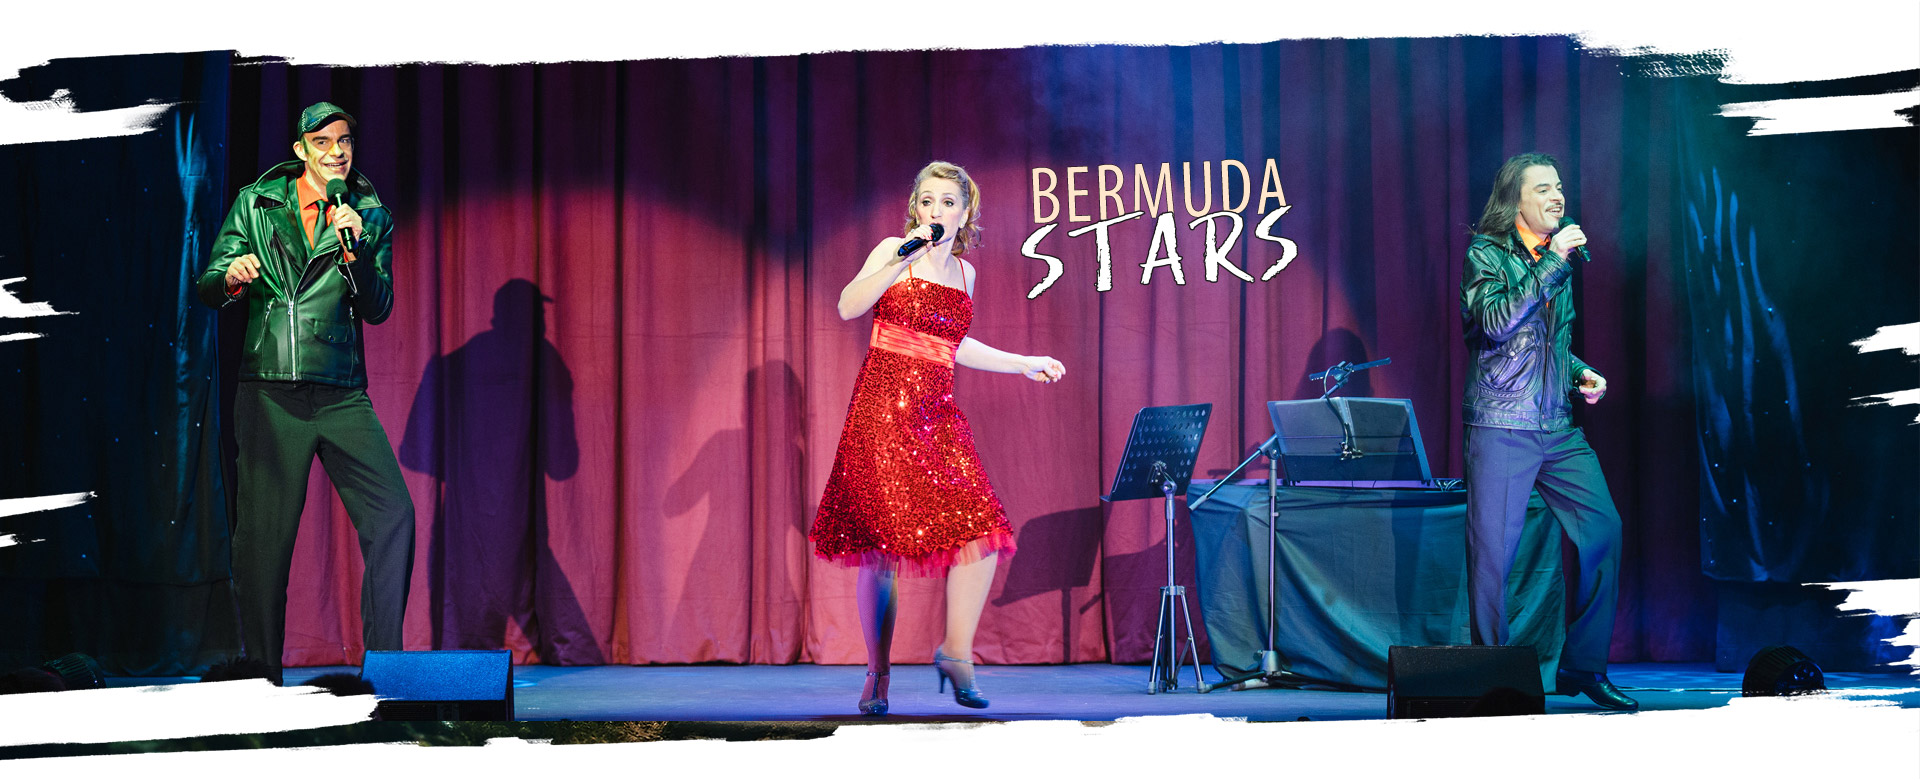 BermudaStars